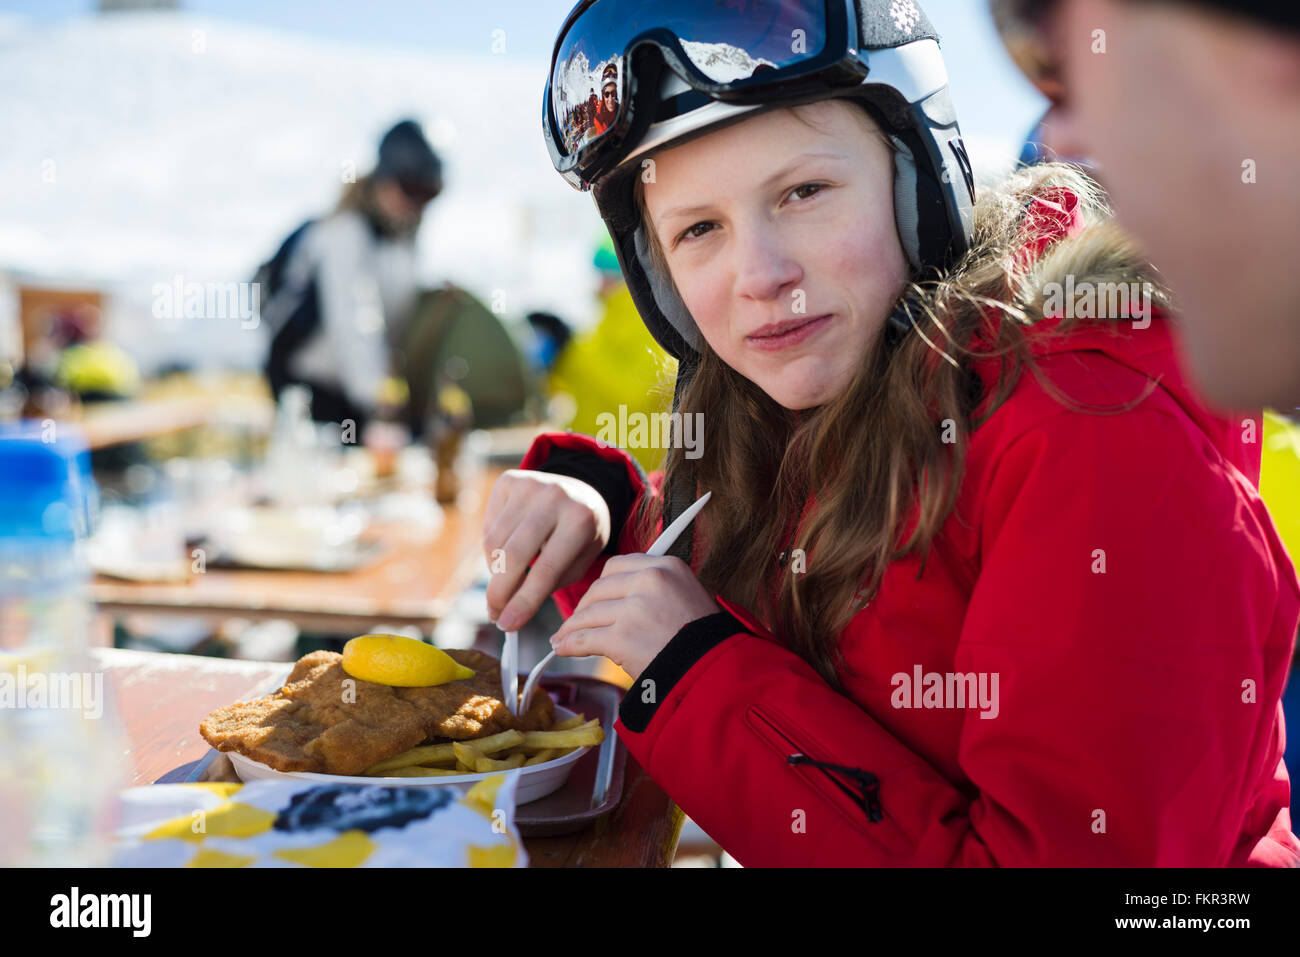 Mädchen in die Kamera Lächeln, wenn Essen Schnitzel mit Pommes in der Mittagspause auf der Ulmer Hütte im Skigebiet St. Anton, Tirol, Österreich Stockfoto